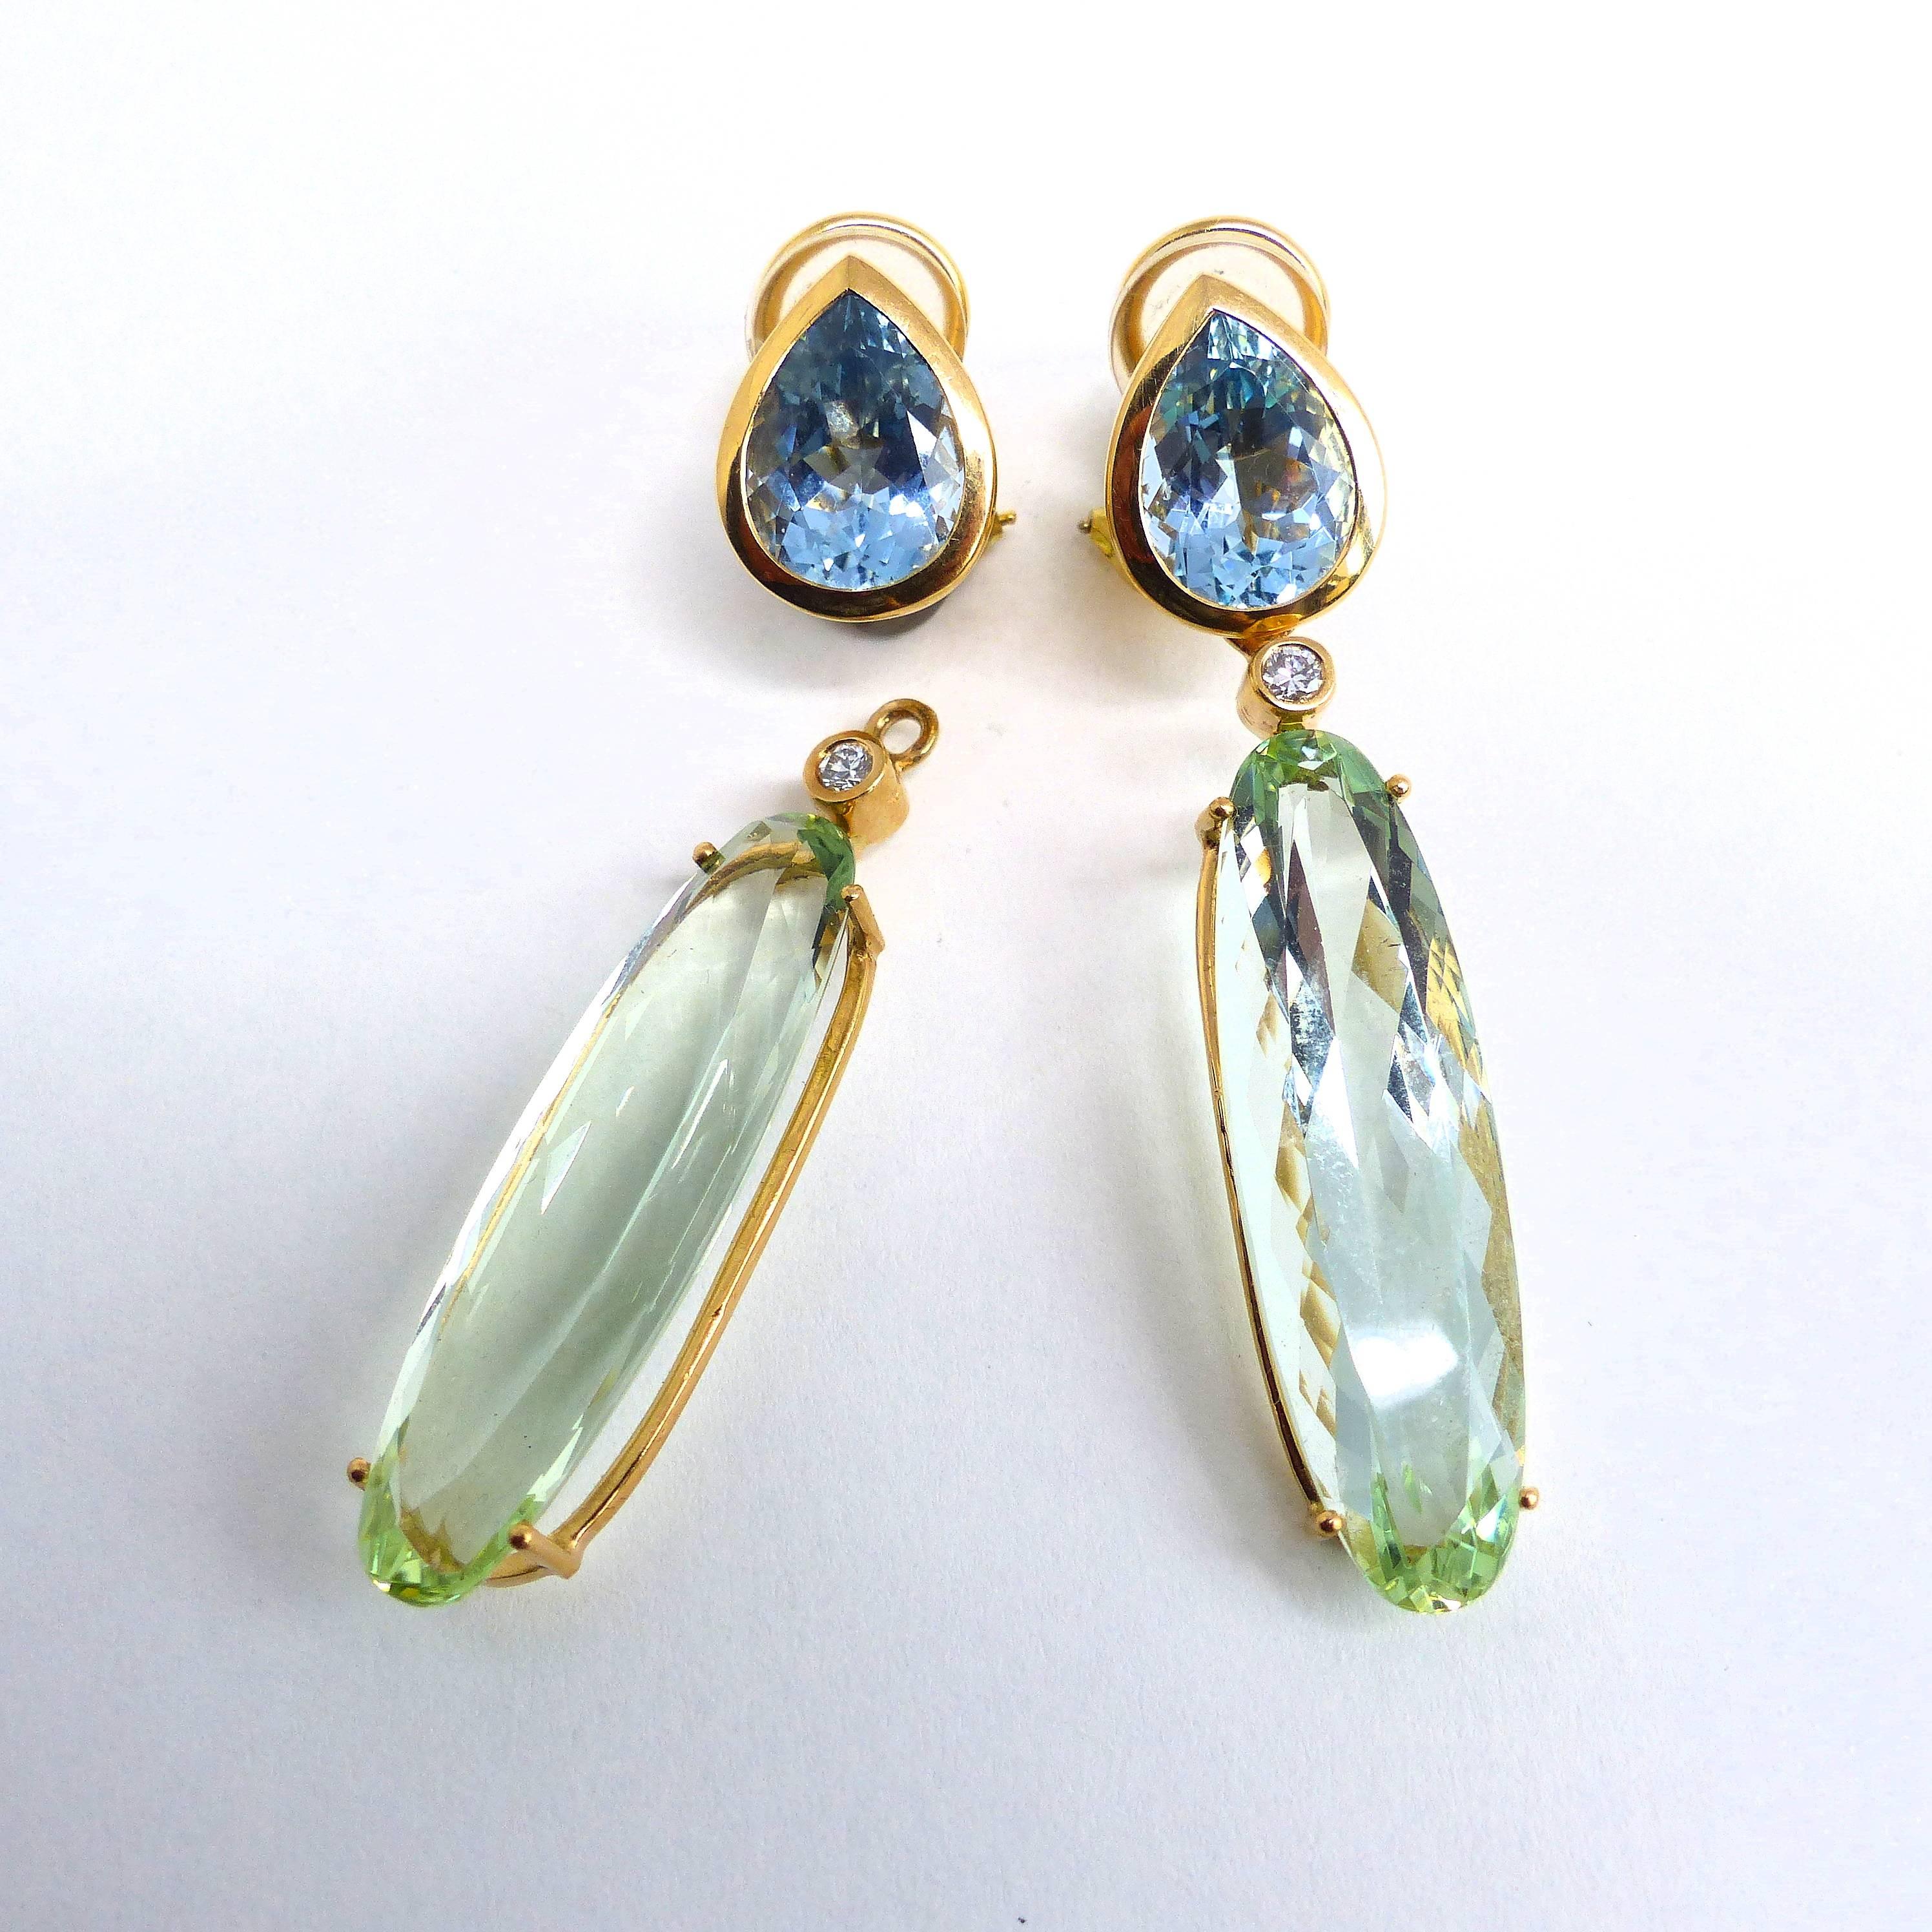 Thomas Leyser ist bekannt für seine zeitgenössischen Schmuckentwürfe mit edlen Farbedelsteinen und Diamanten. 

Dieses Paar Ohrringe aus 18k Roségold ist mit 2x feinen Aquamarinen (Birnenform, 12x9mm, 6,01ct) besetzt! 2x feine grüne Berylle